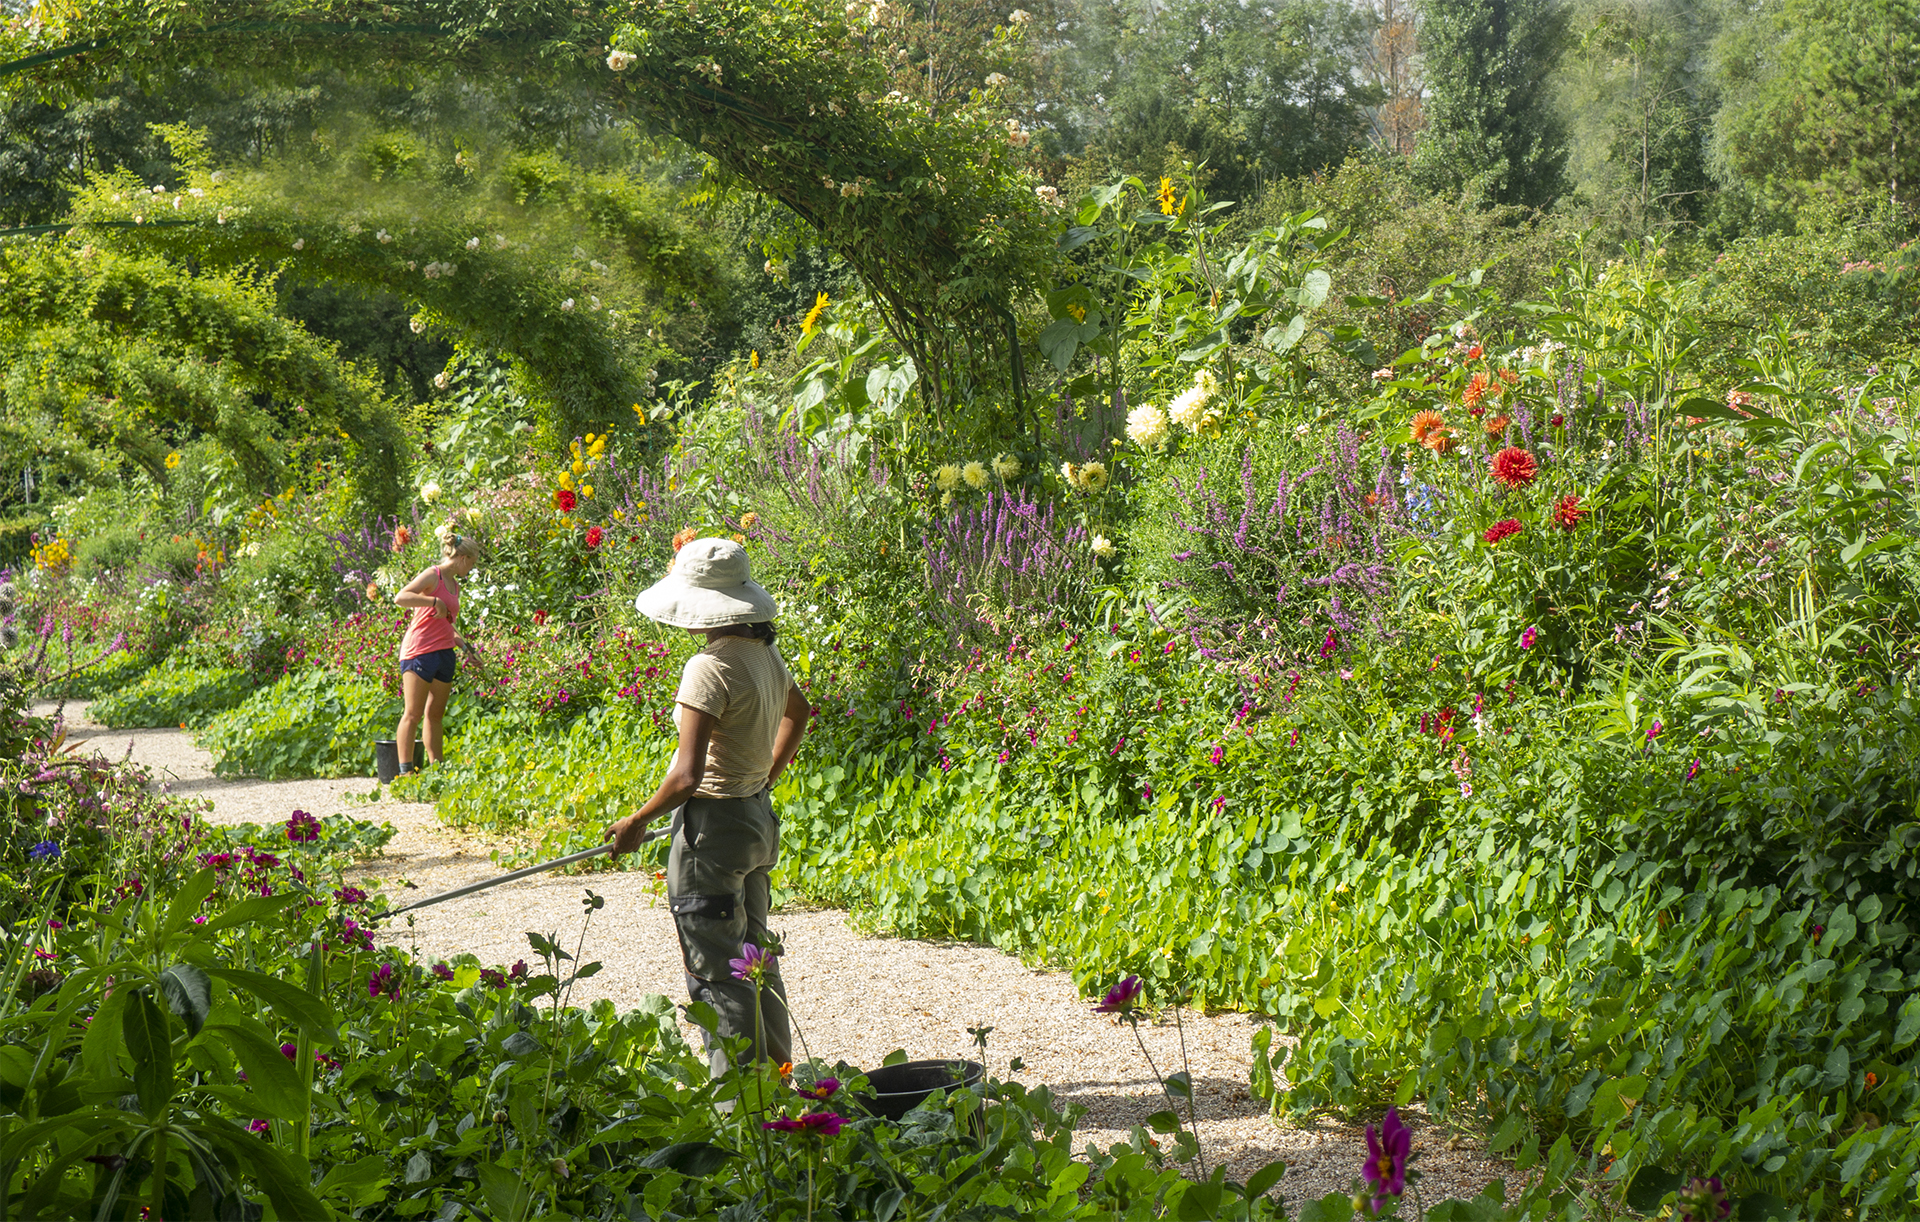 Experience Monet's garden as a gardener